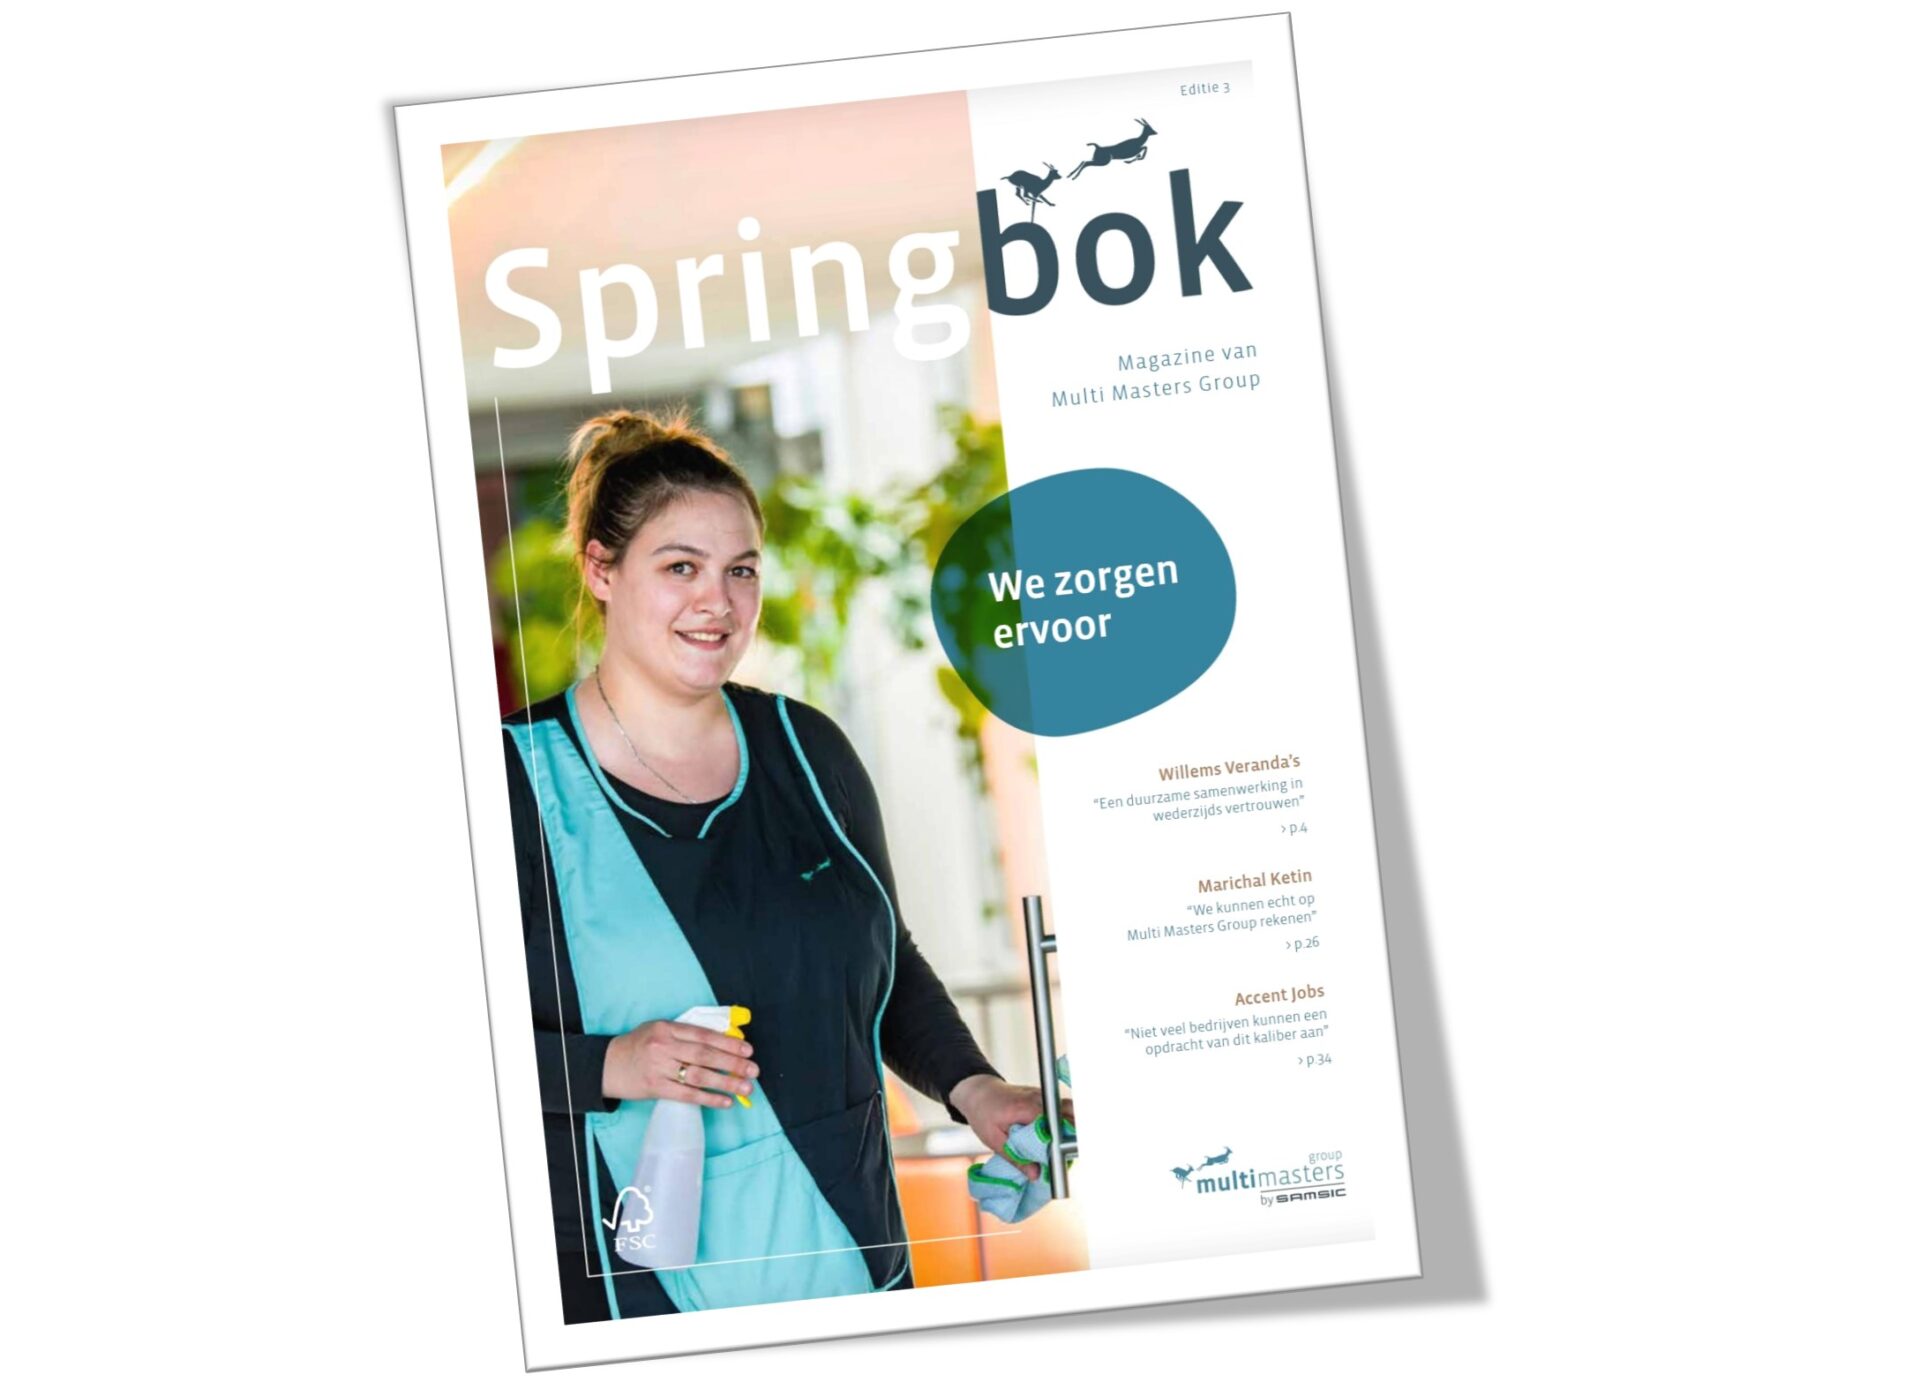 Springbok - het magazine van Multi Masters Group: de nieuwe editie is nu beschikbaar.